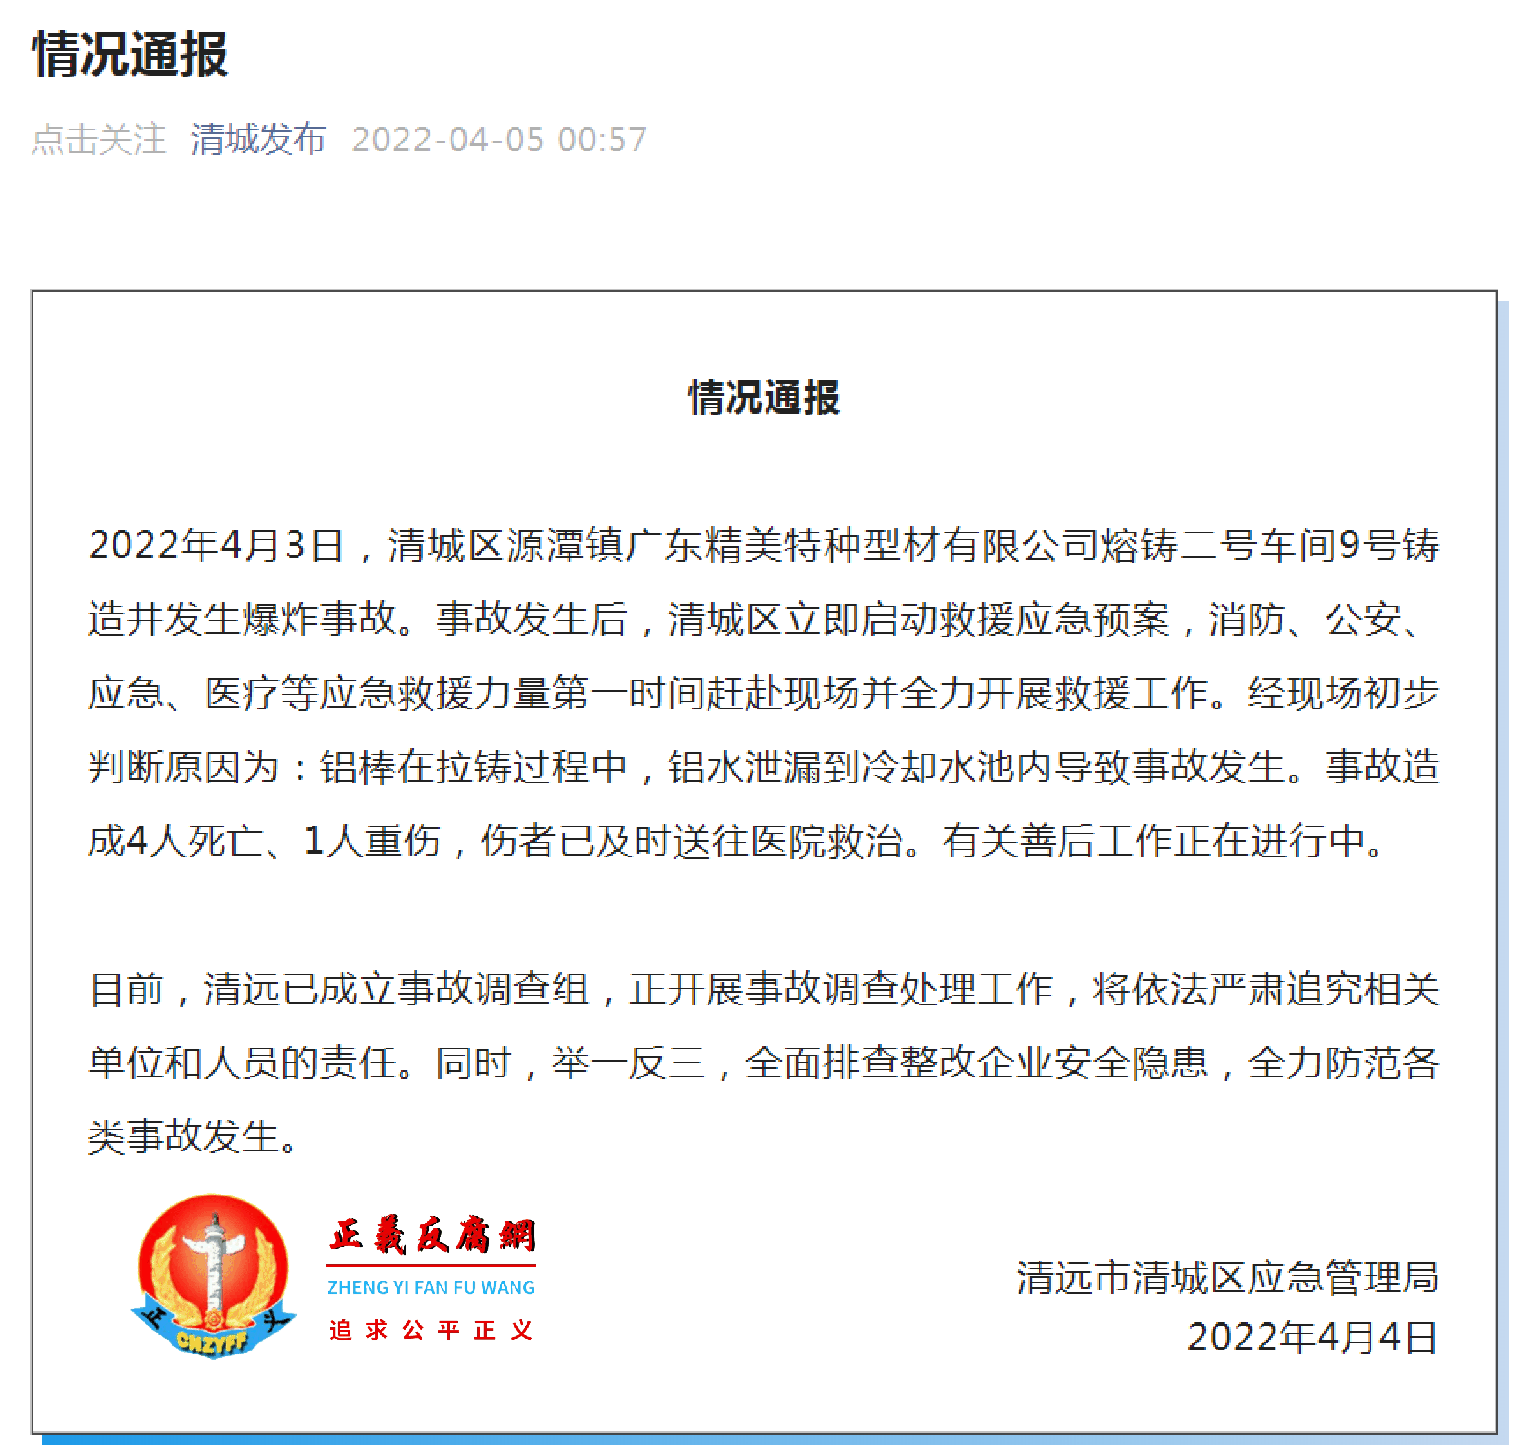 清远市清城区应急管理局发布一份《情况通报》 .png